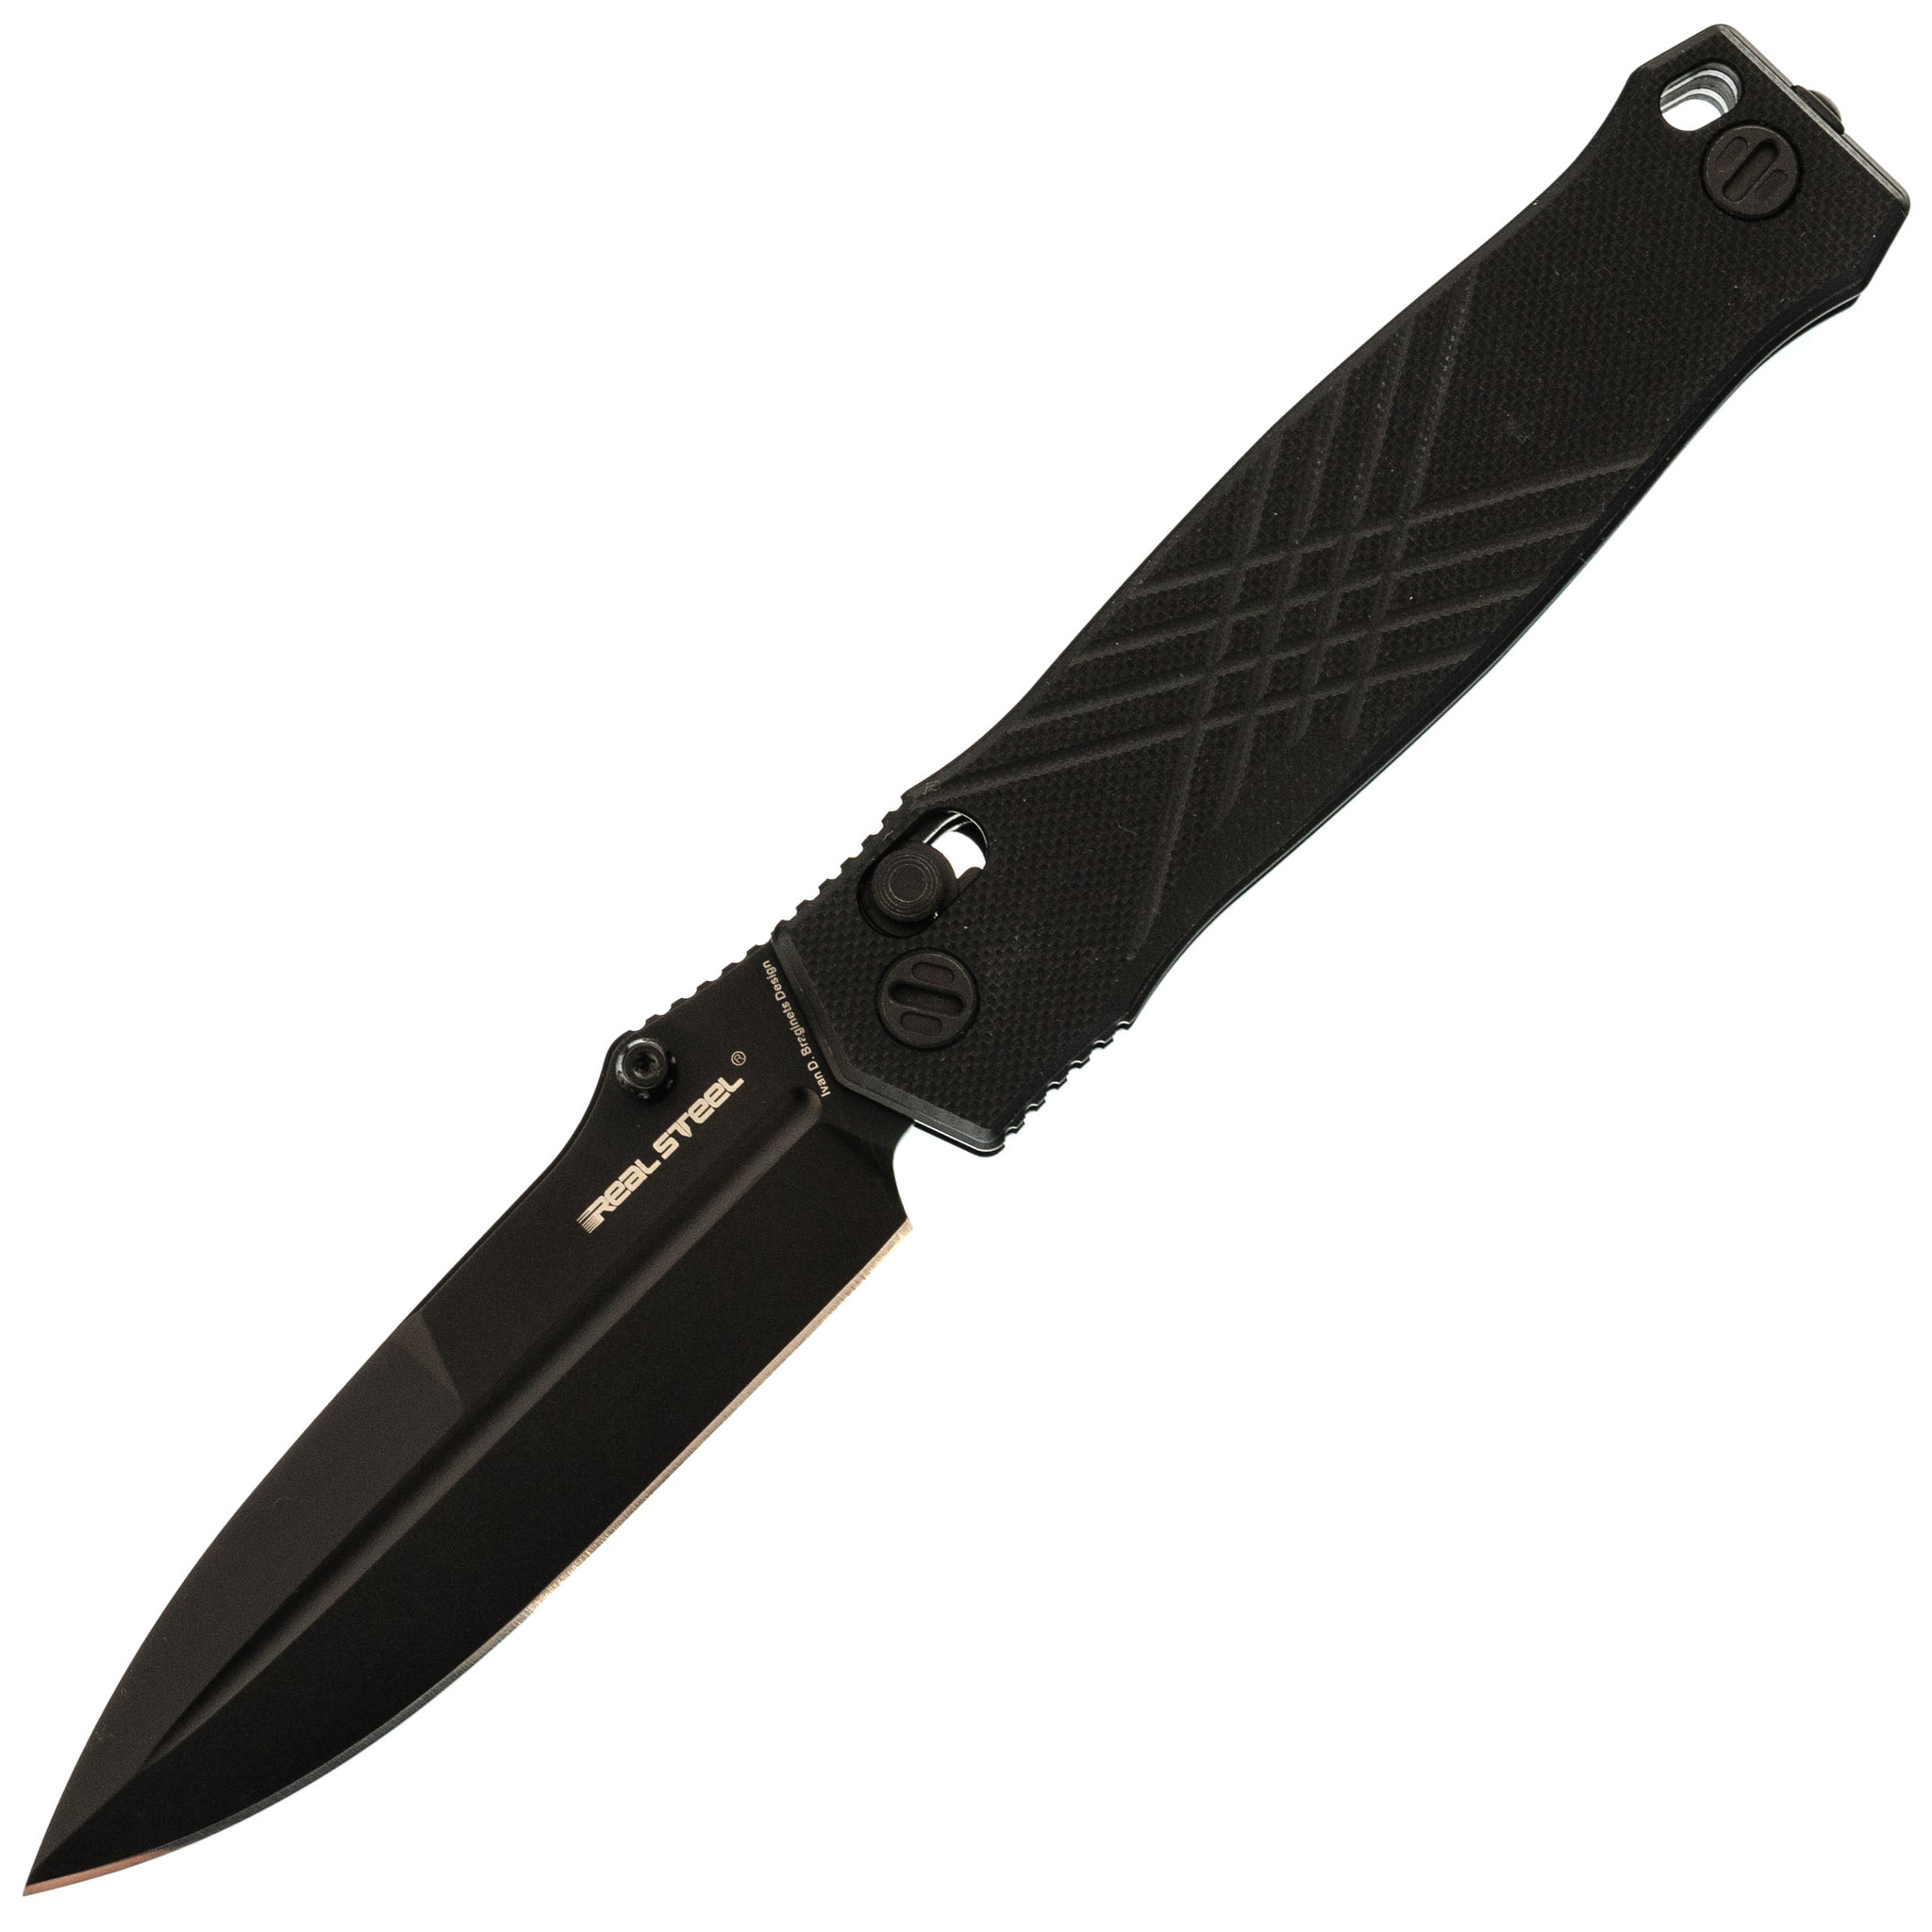 Складной нож RealSteel Muninn Black, сталь VG-10, рукоять G10